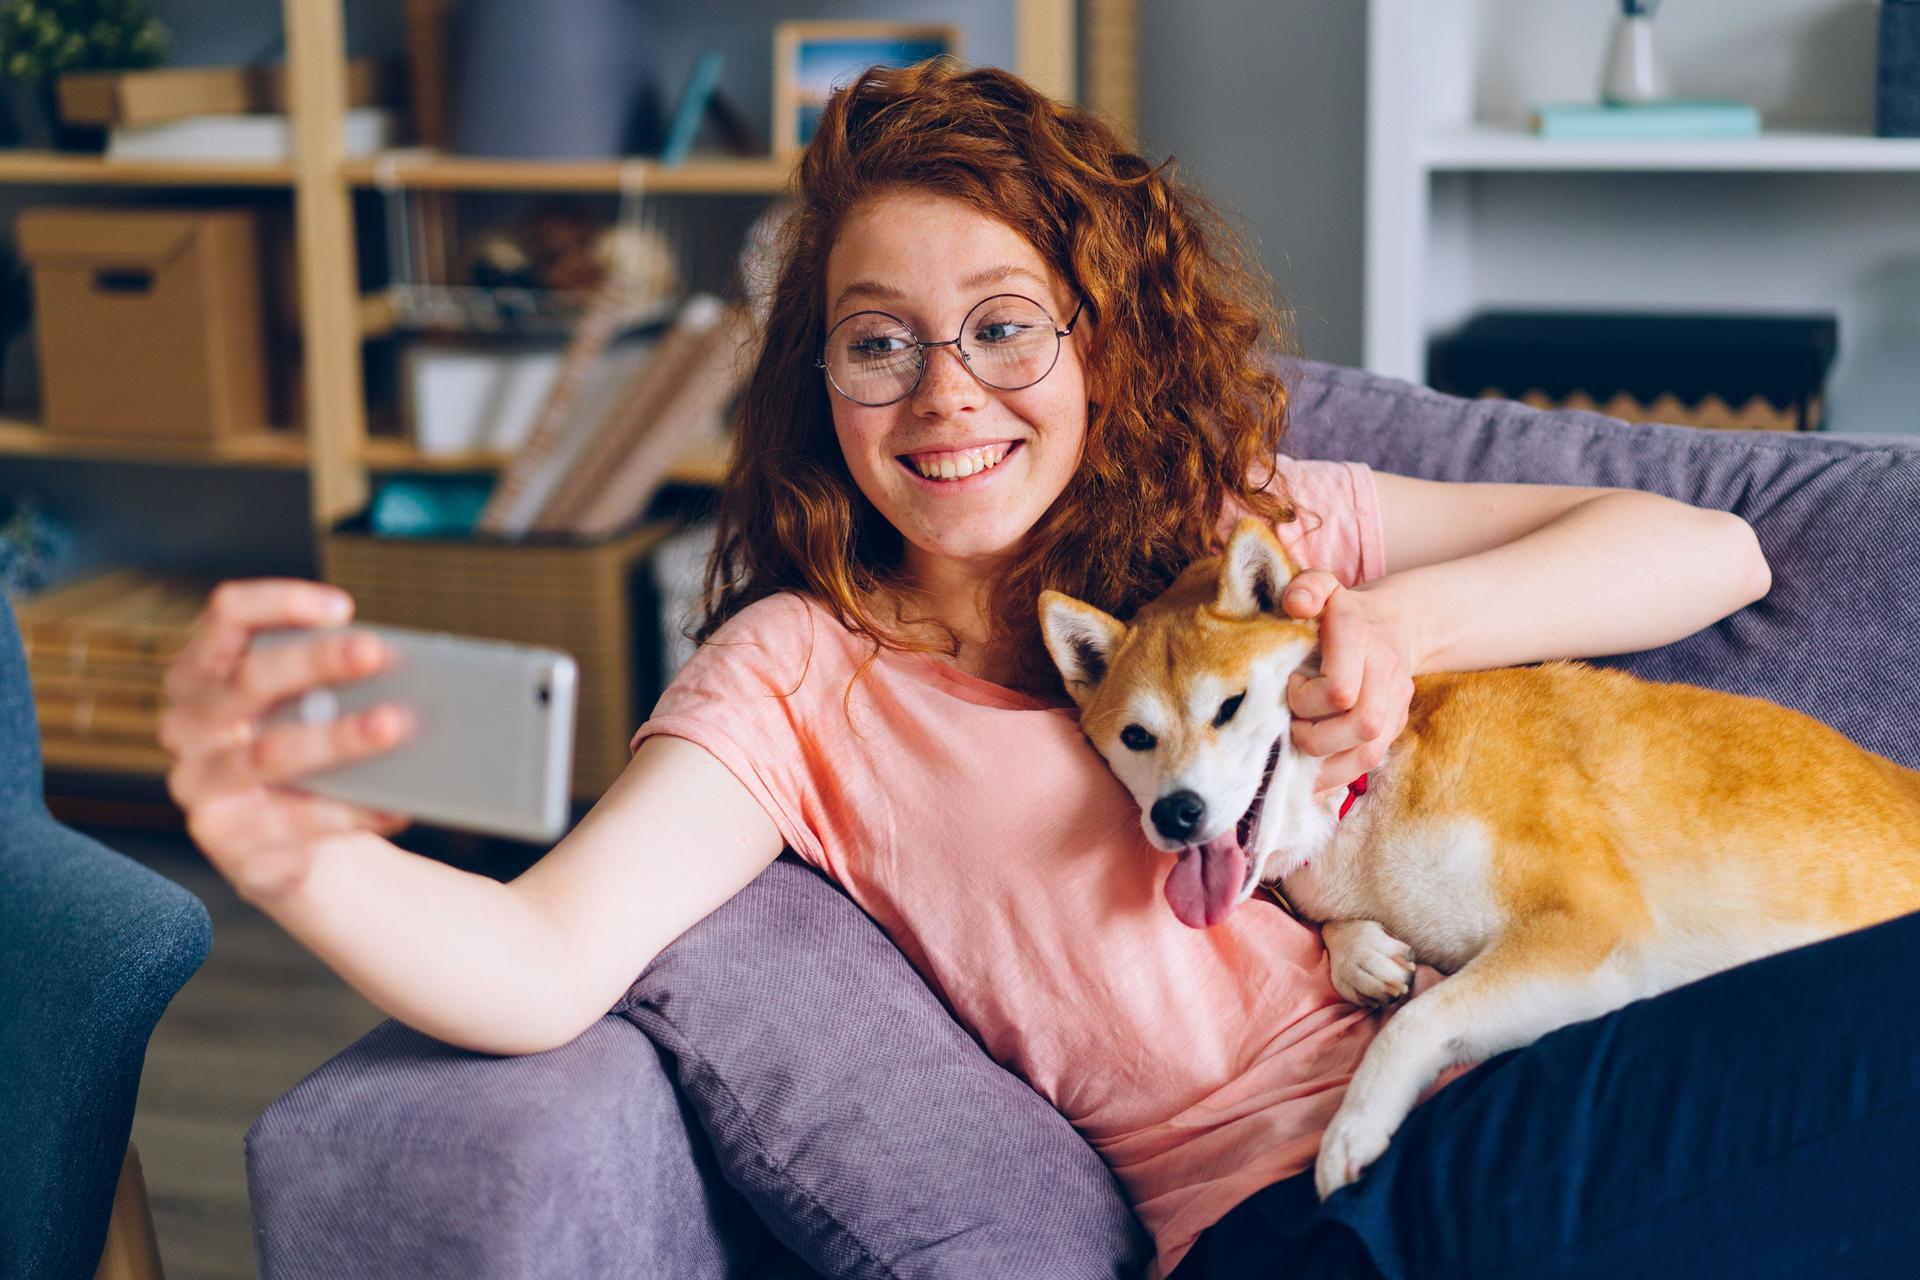 Junge Frau sitzt mit einem Shiba Inu Hund auf einem Sofa und macht mit einem Smartphone ein Selfie von sich und dem Hund.